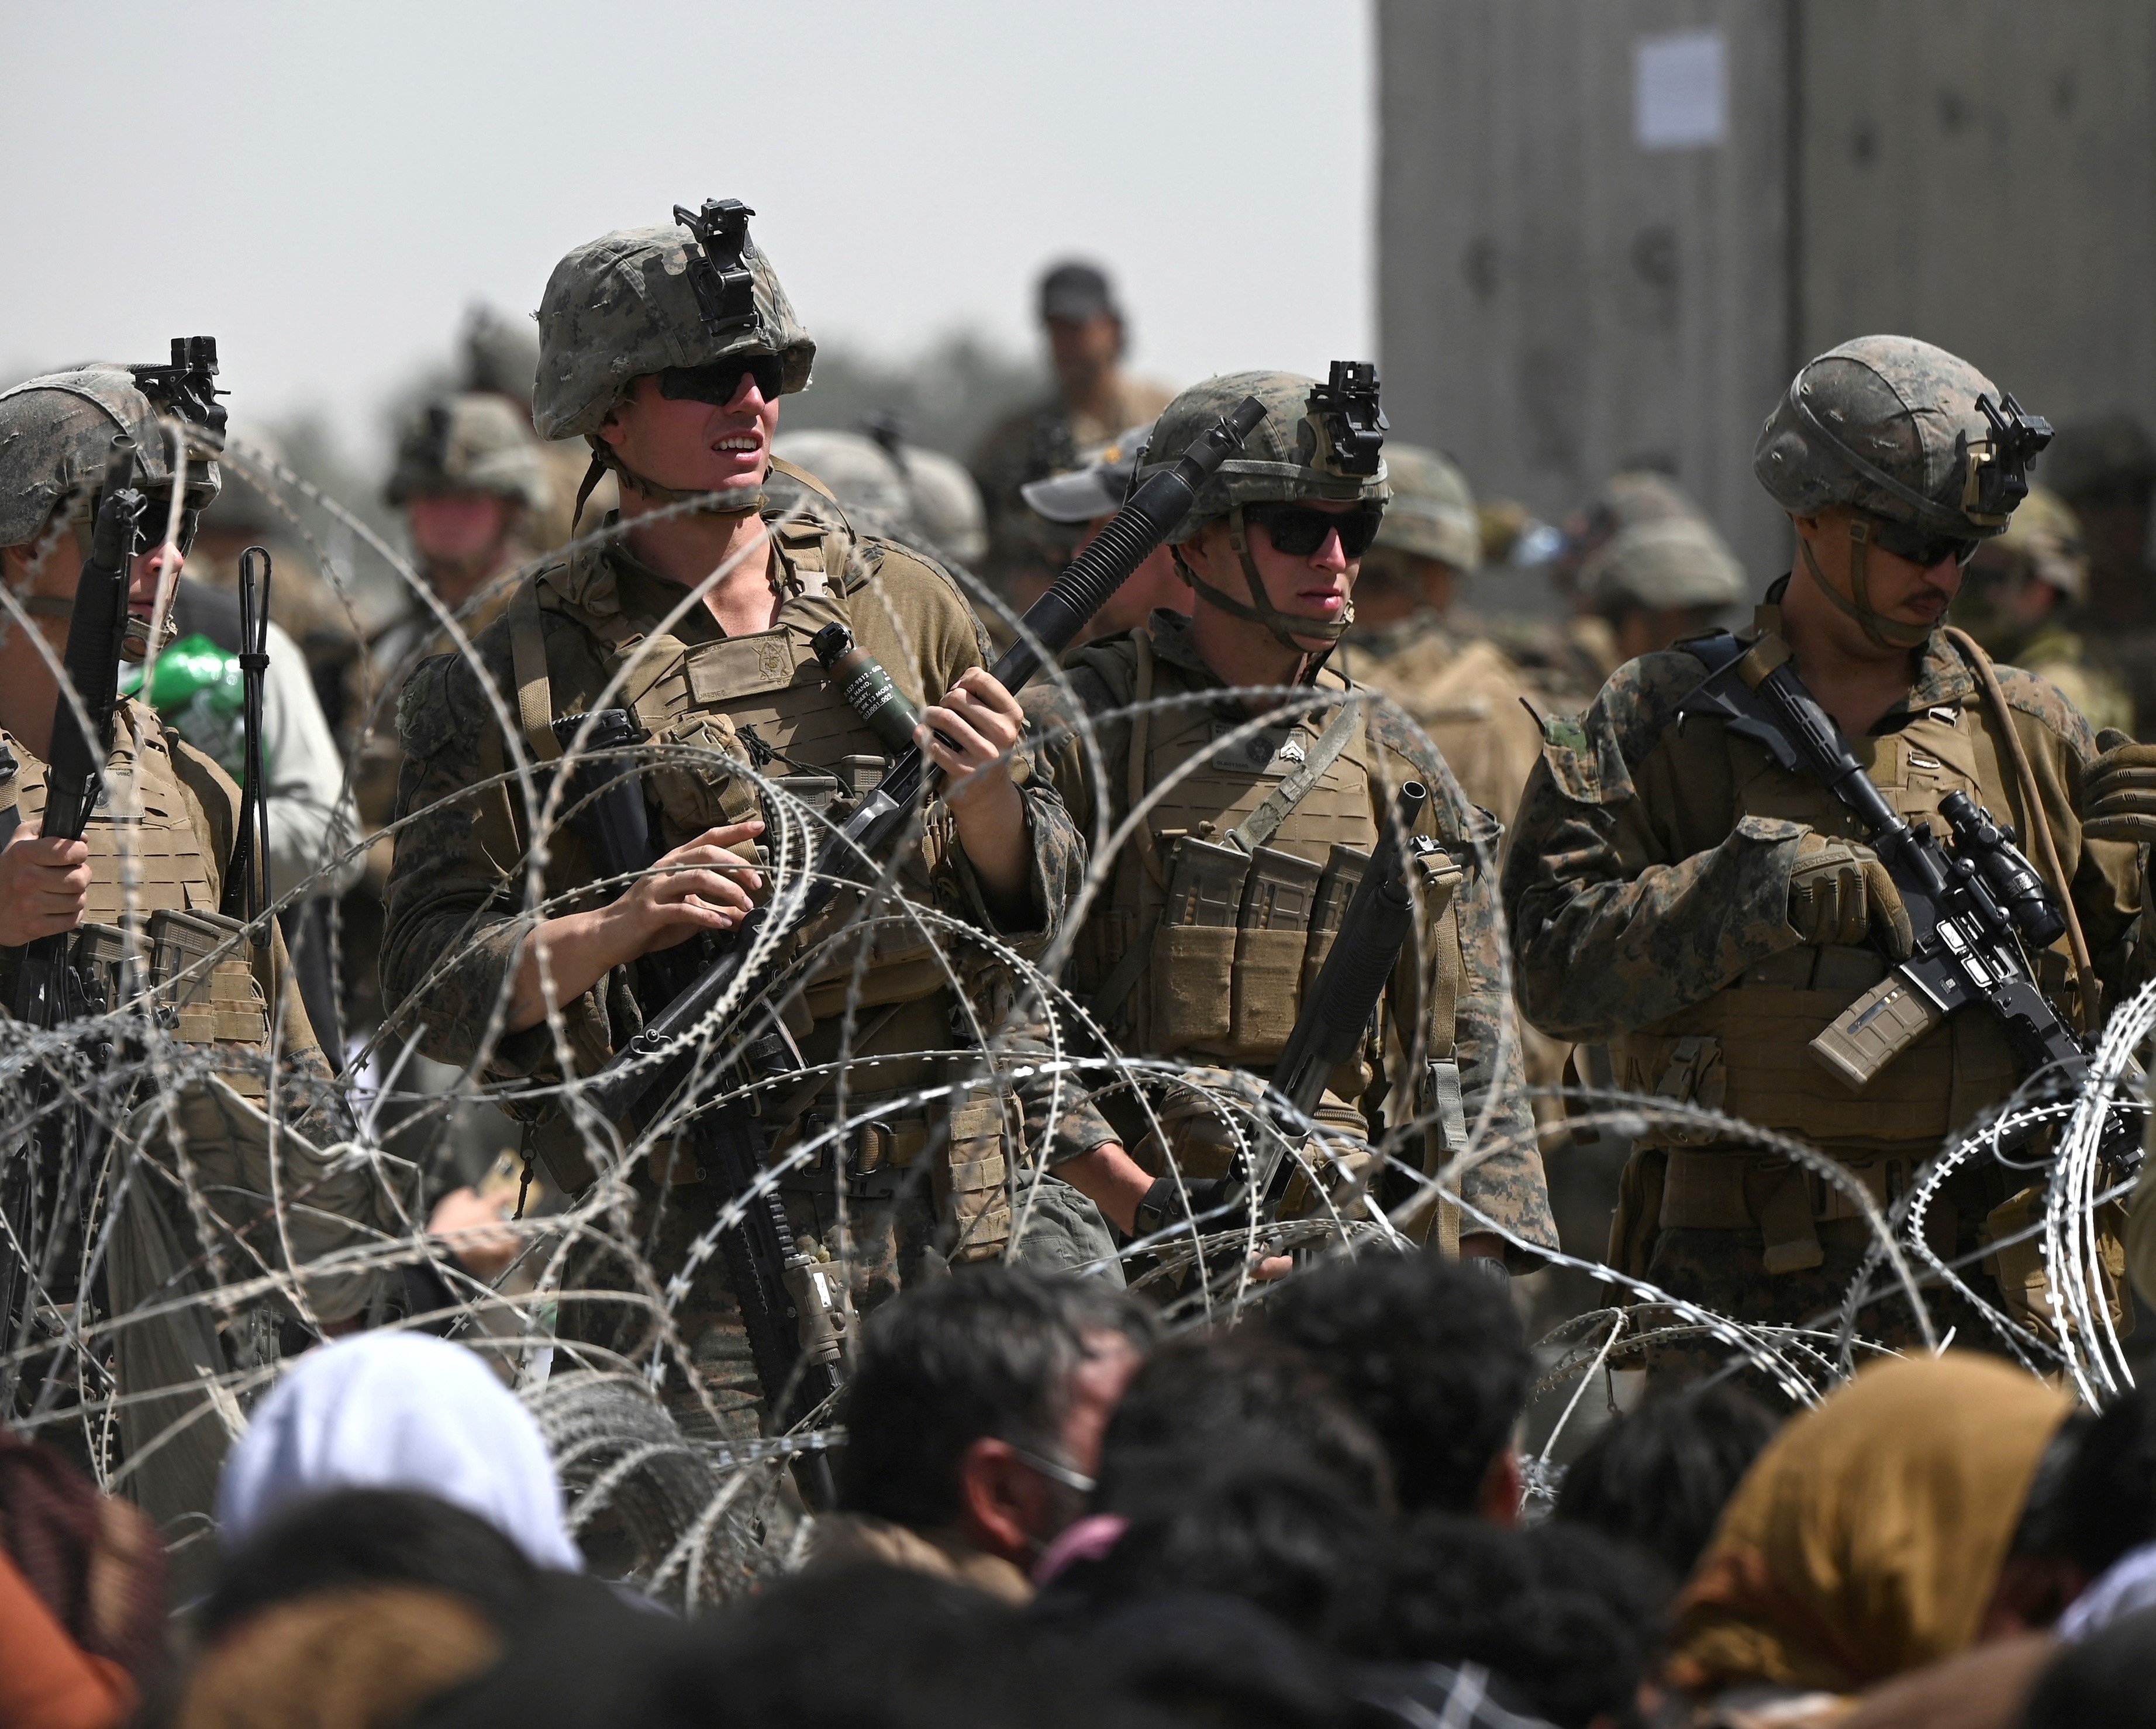 Des soldats américains montent la garde derrière des barbelés alors que des Afghans sont assis en bord de route près de la partie militaire de l’aéroport de Kaboul, le 20 août 2021 (AFP)